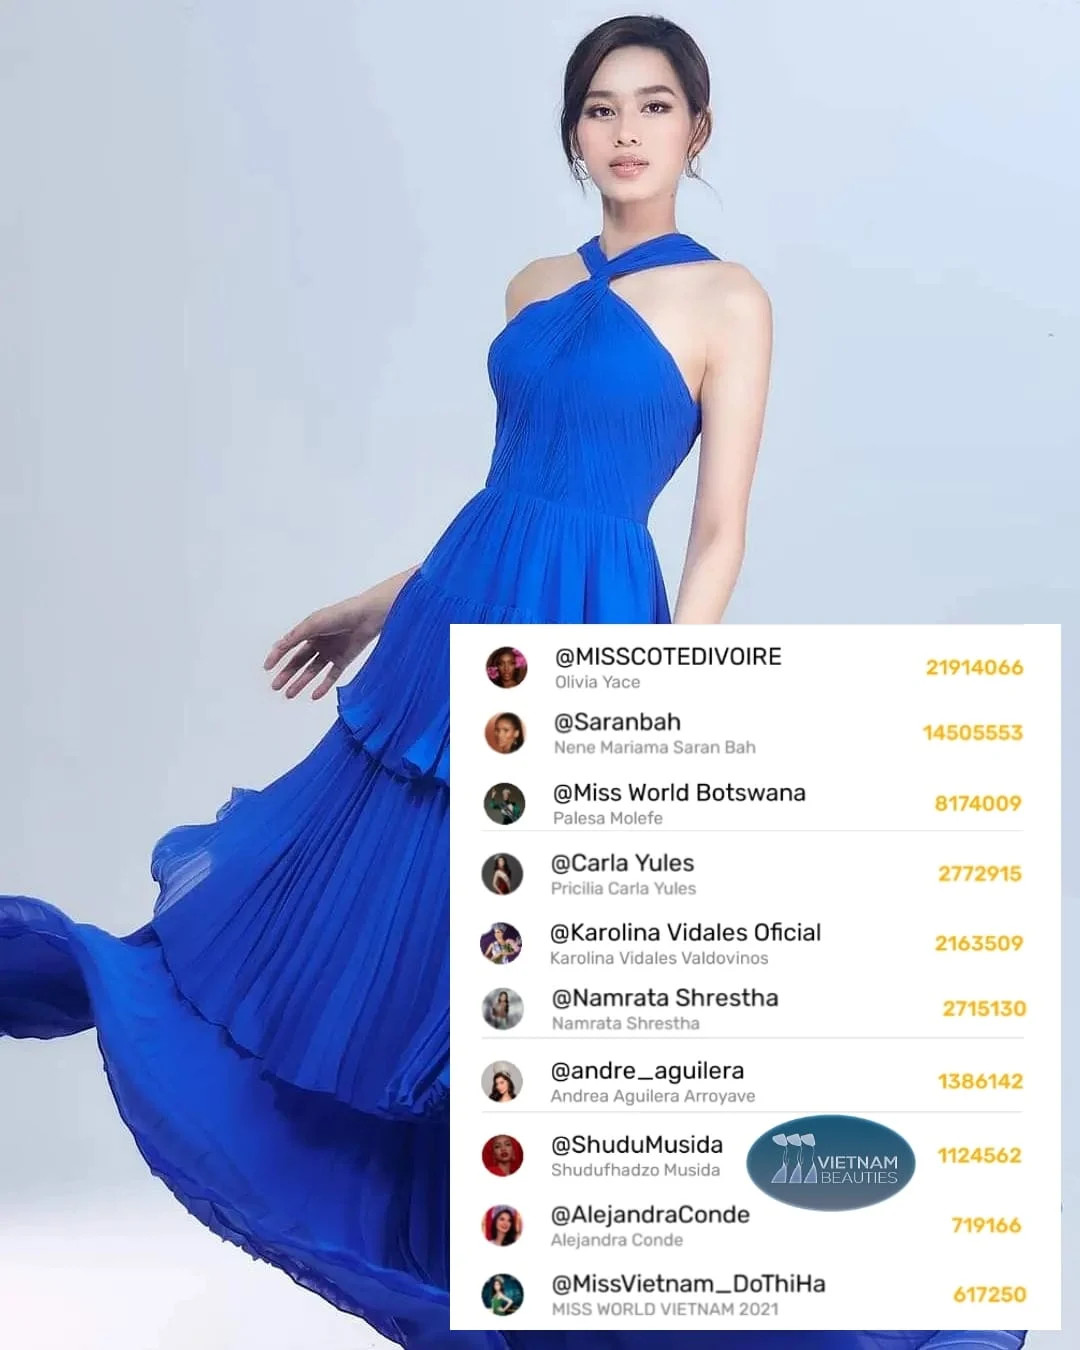 Trên phần bình chọn của ứng dụng Mobstar, Hoa hậu Đỗ Thị Hà đứng ở vị trí thứ 10